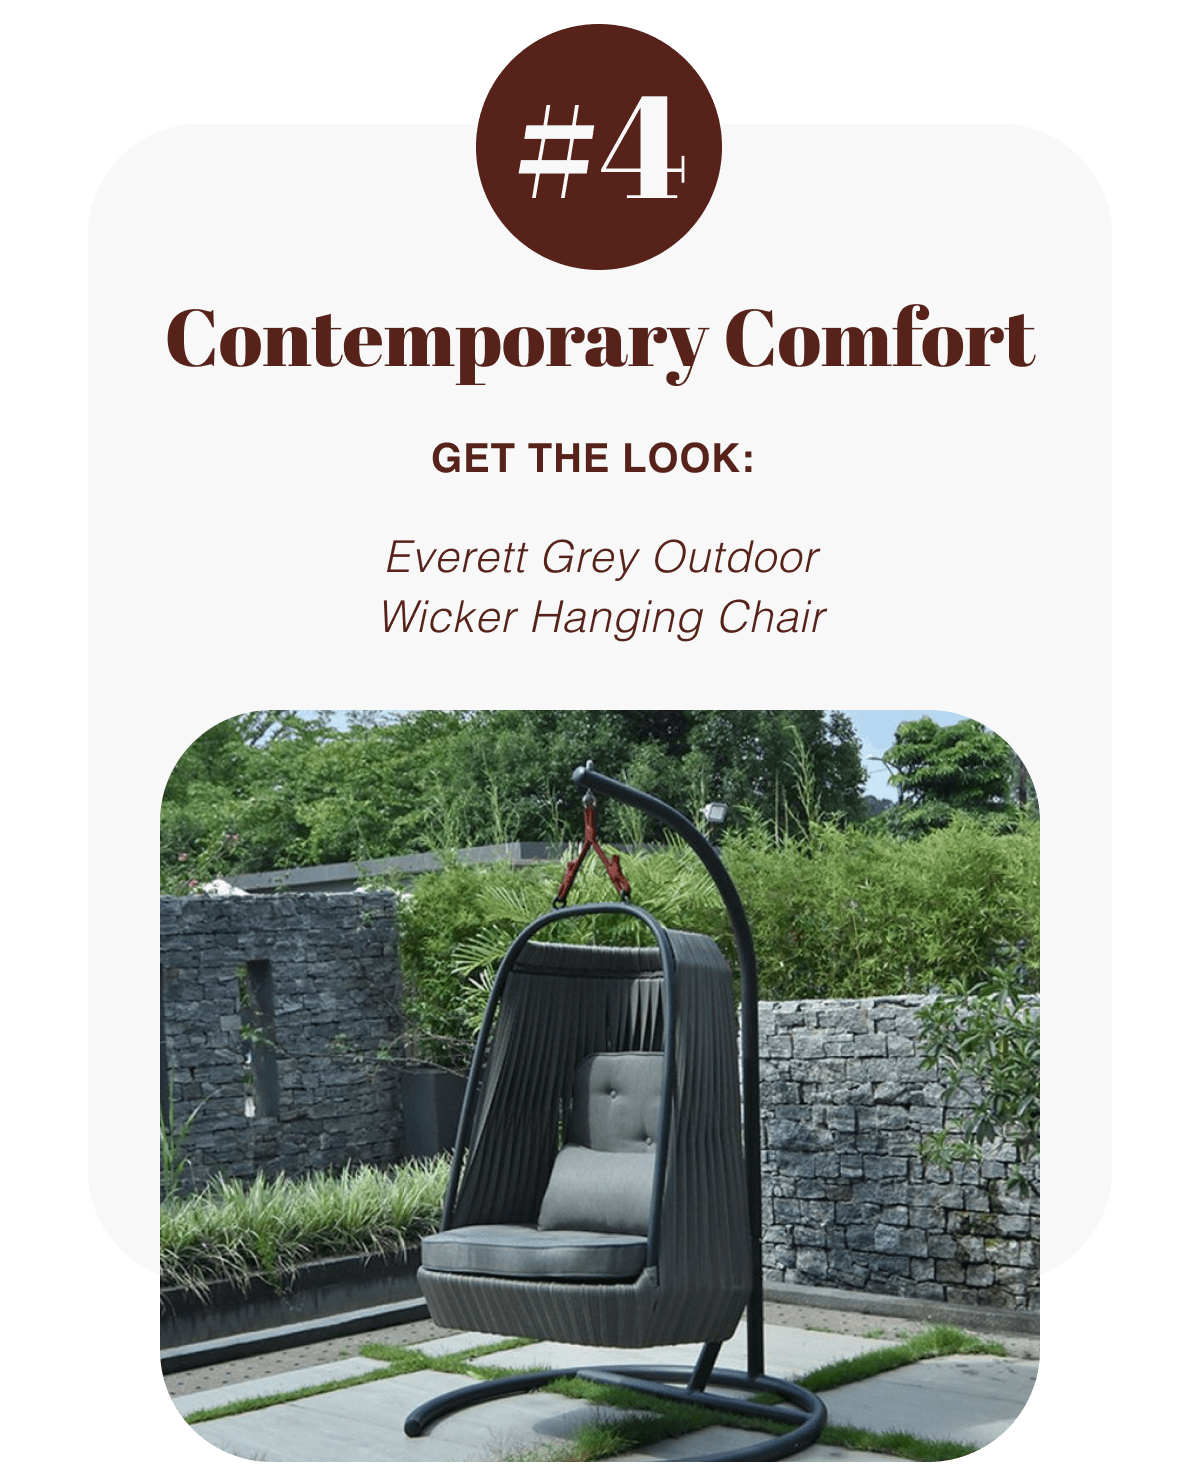 Get The Look: Everett Grey Outdoor Wicker Hanging Chair